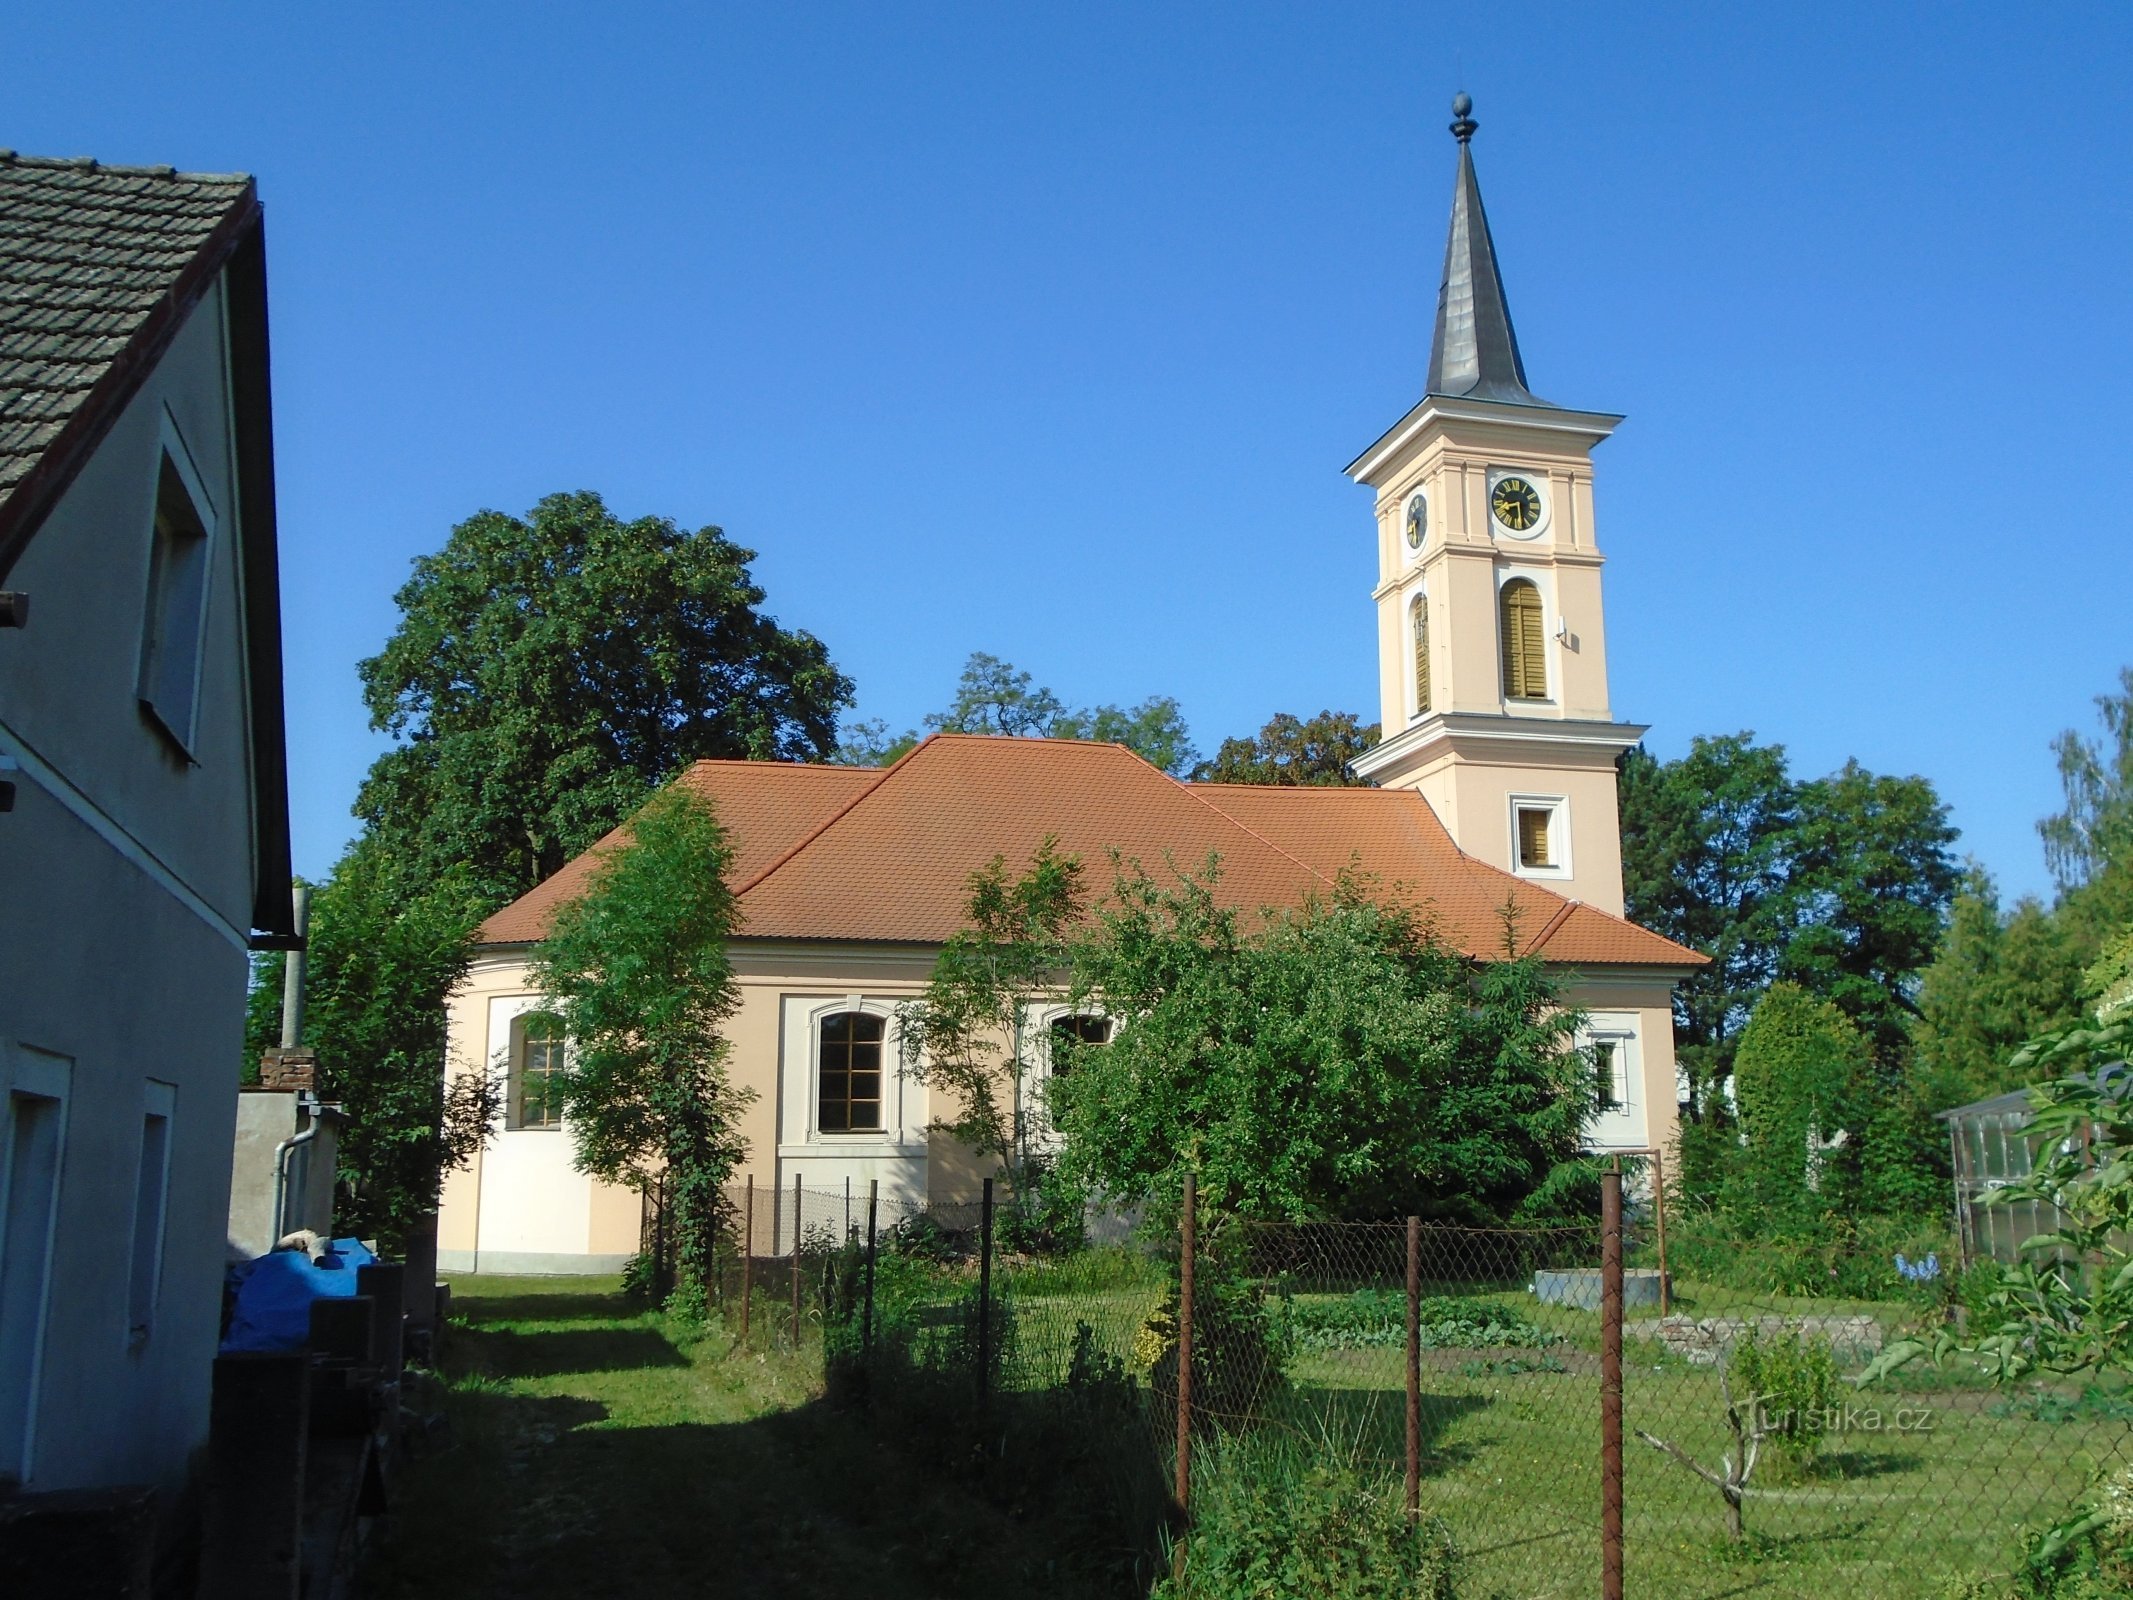 Євангельська церква аугсбурзького віросповідання (Чернілов)